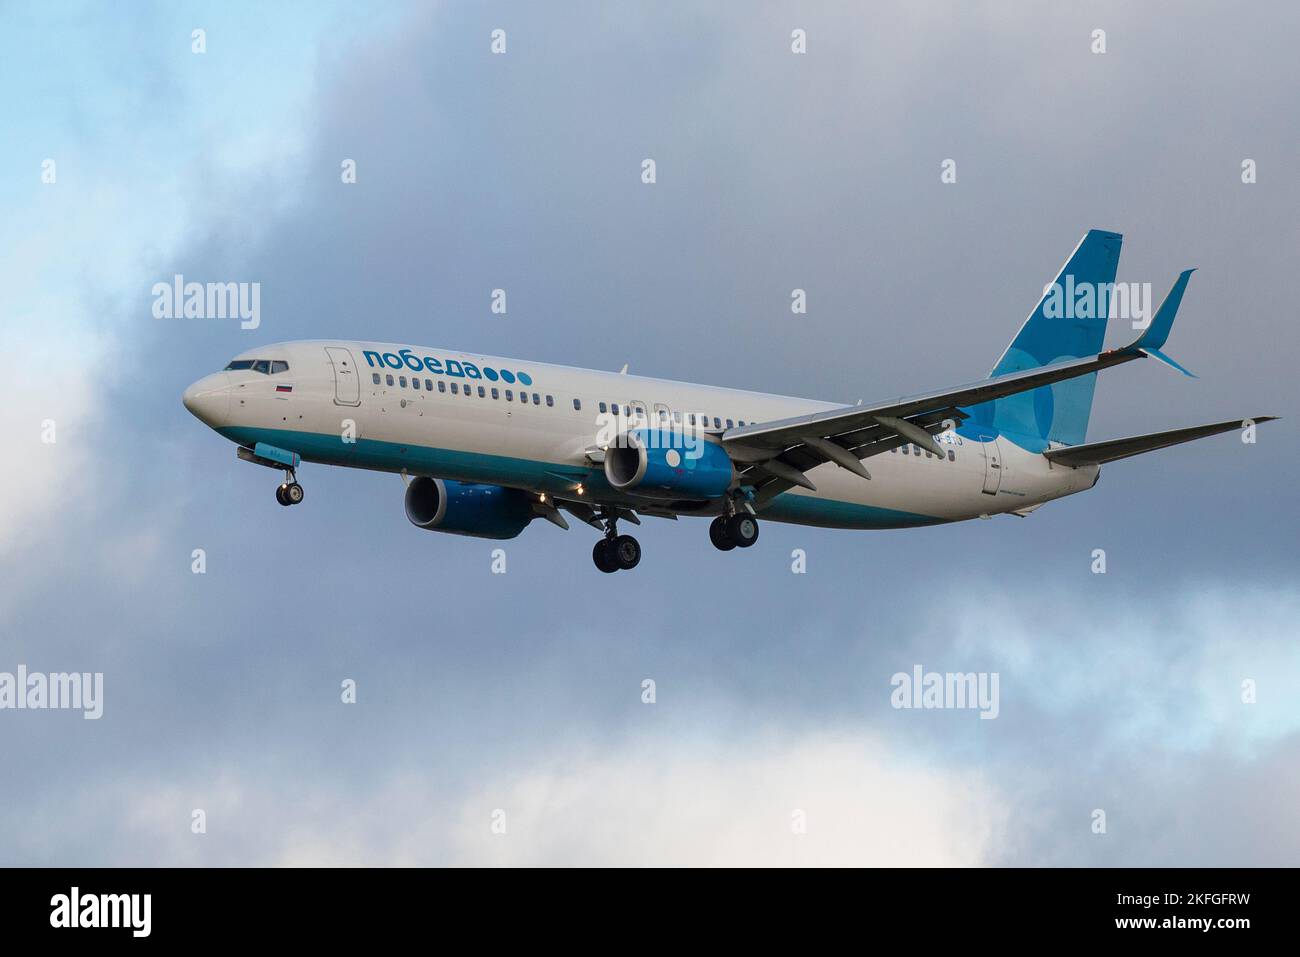 SANKT PETERSBURG, RUSSLAND - 28. OKTOBER 2020: Flugzeug Boeing 737-800 (VQ-BTJ) der Pobeda Airlines auf Gleitpfad gegen bewölkten Himmel Stockfoto